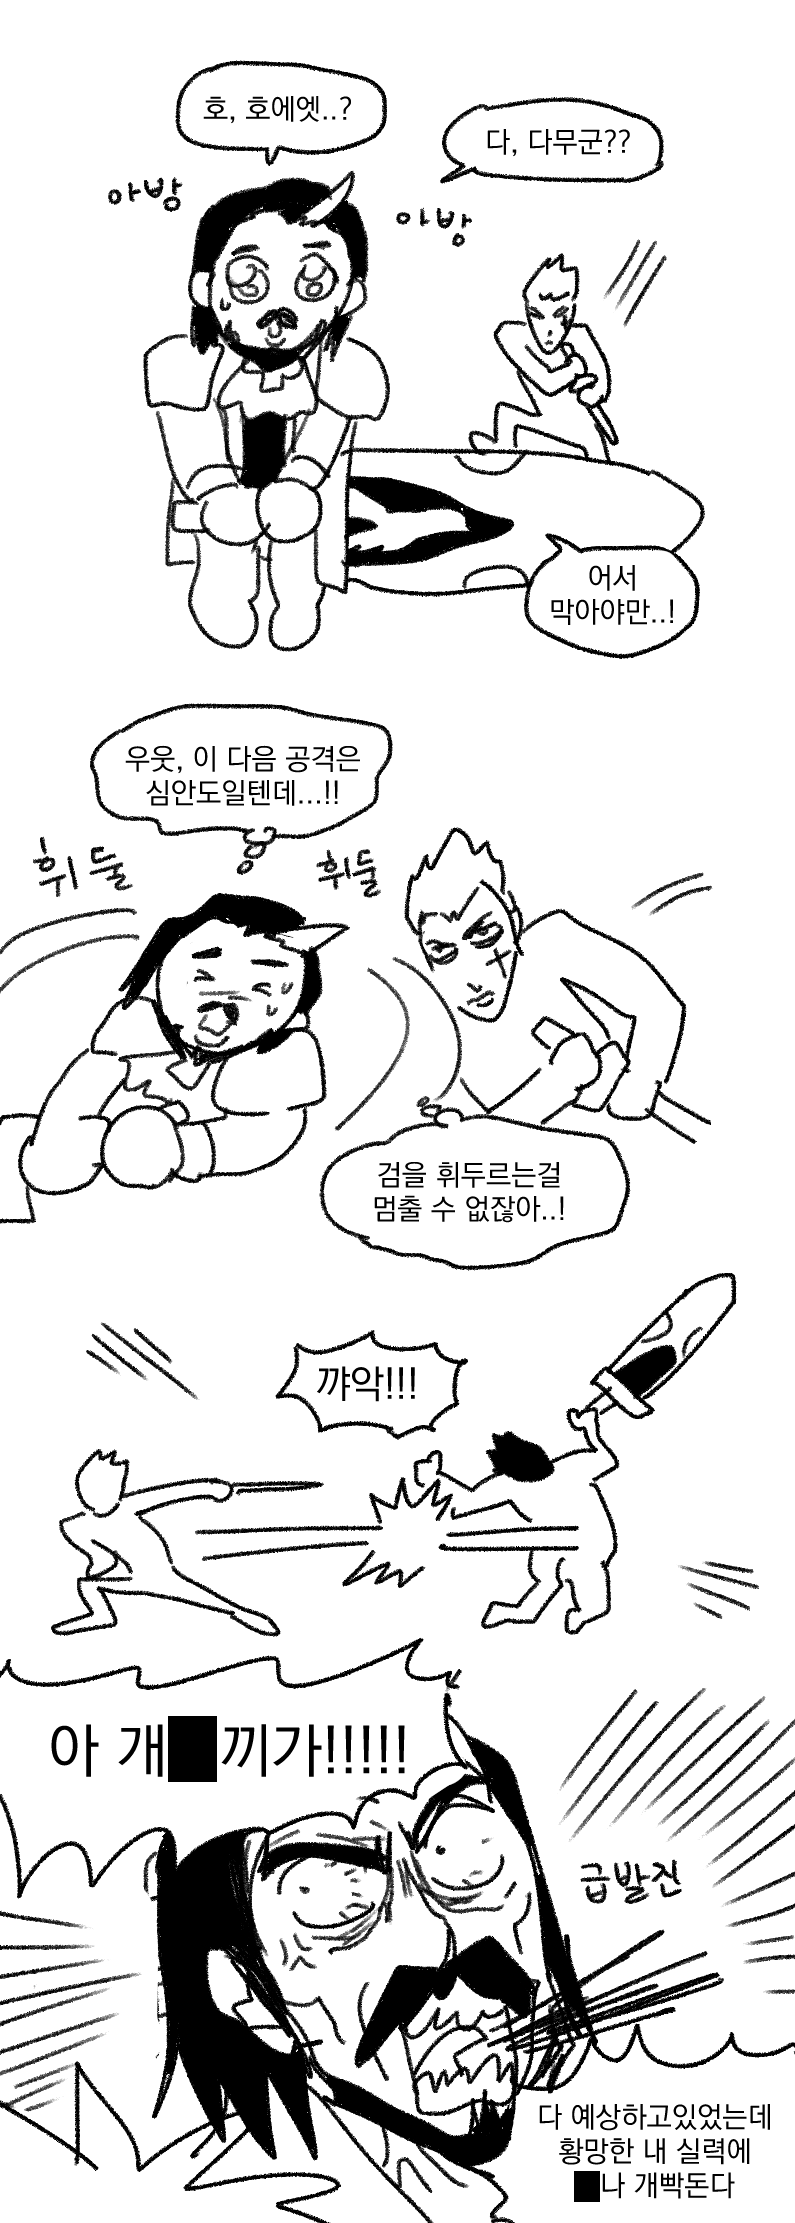 제레온 하는 만화.png